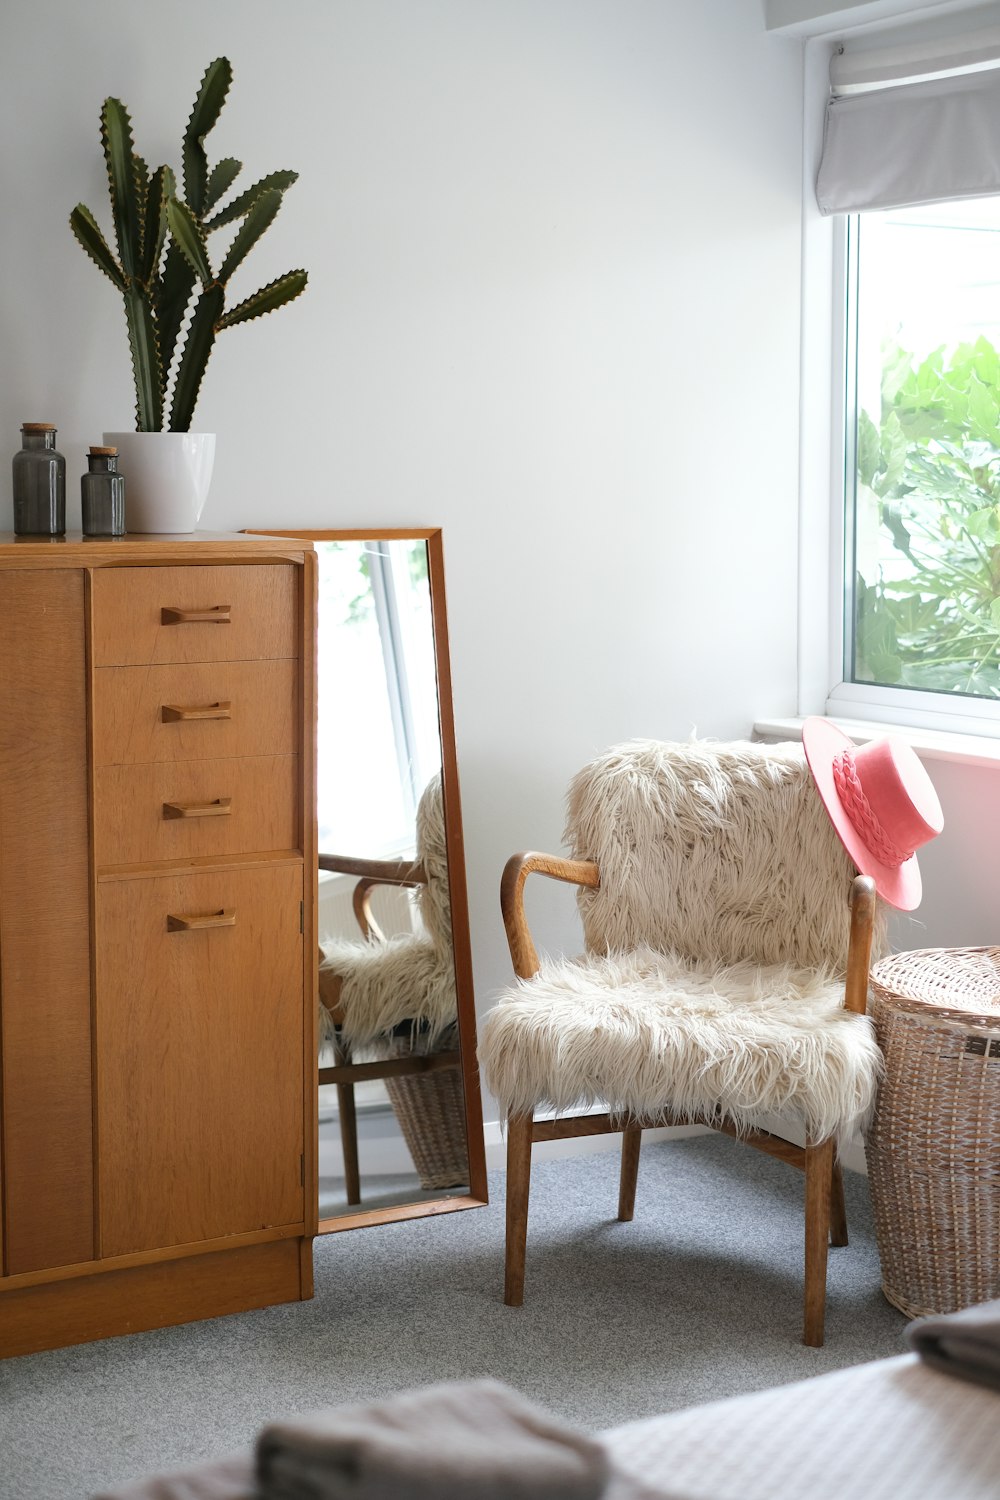 Silla de madera blanca y marrón junto a un mueble de madera marrón